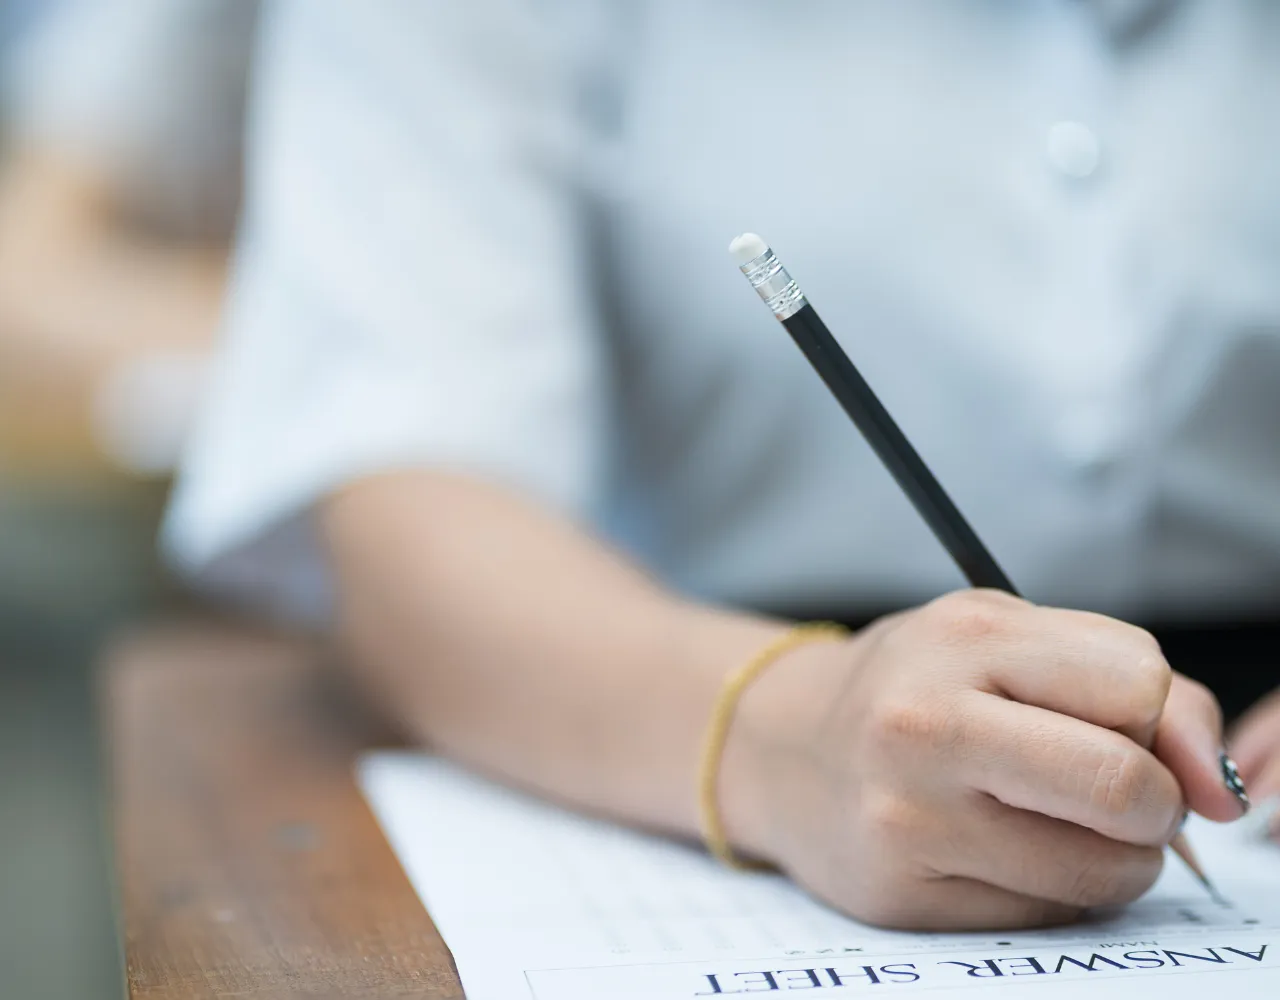 Uma pessoa segura um lápis com a borracha voltada para cima enquanto escreve em uma folha chamada "folha de respostas" sobre uma mesa de madeira.